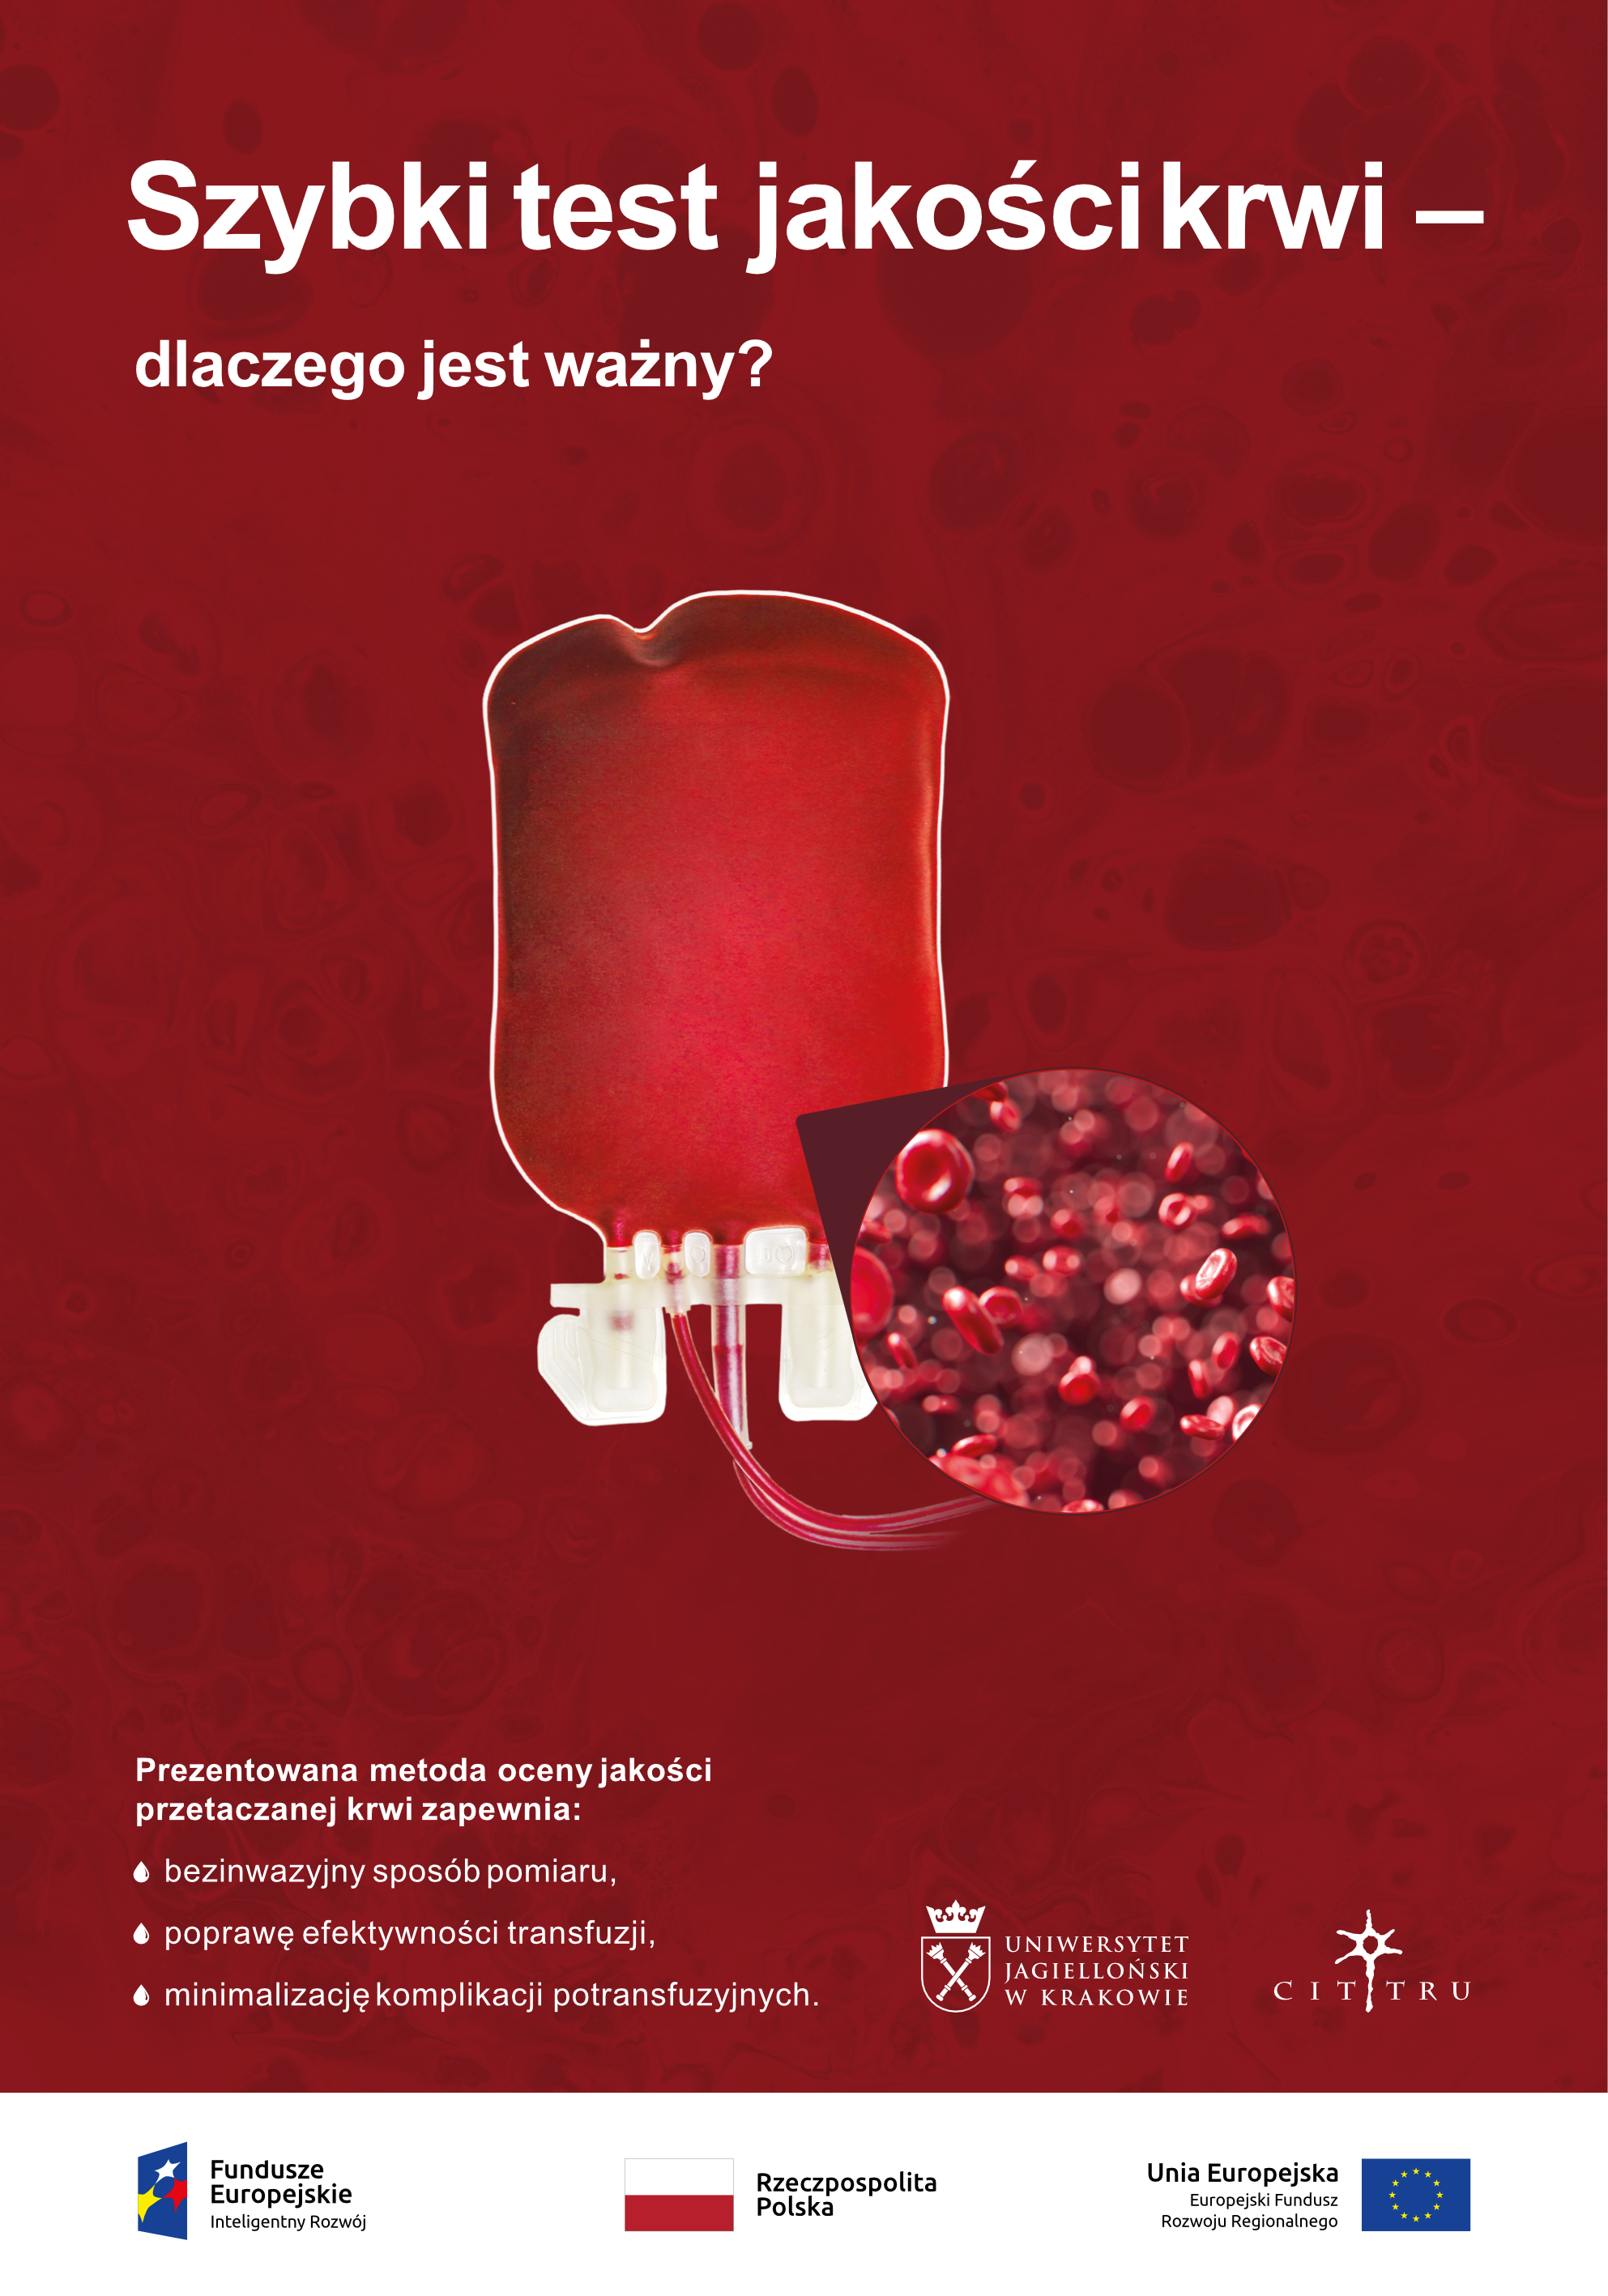 Plakat przedstawia worek krwi z lupką powiększającą ukazującą krwinki